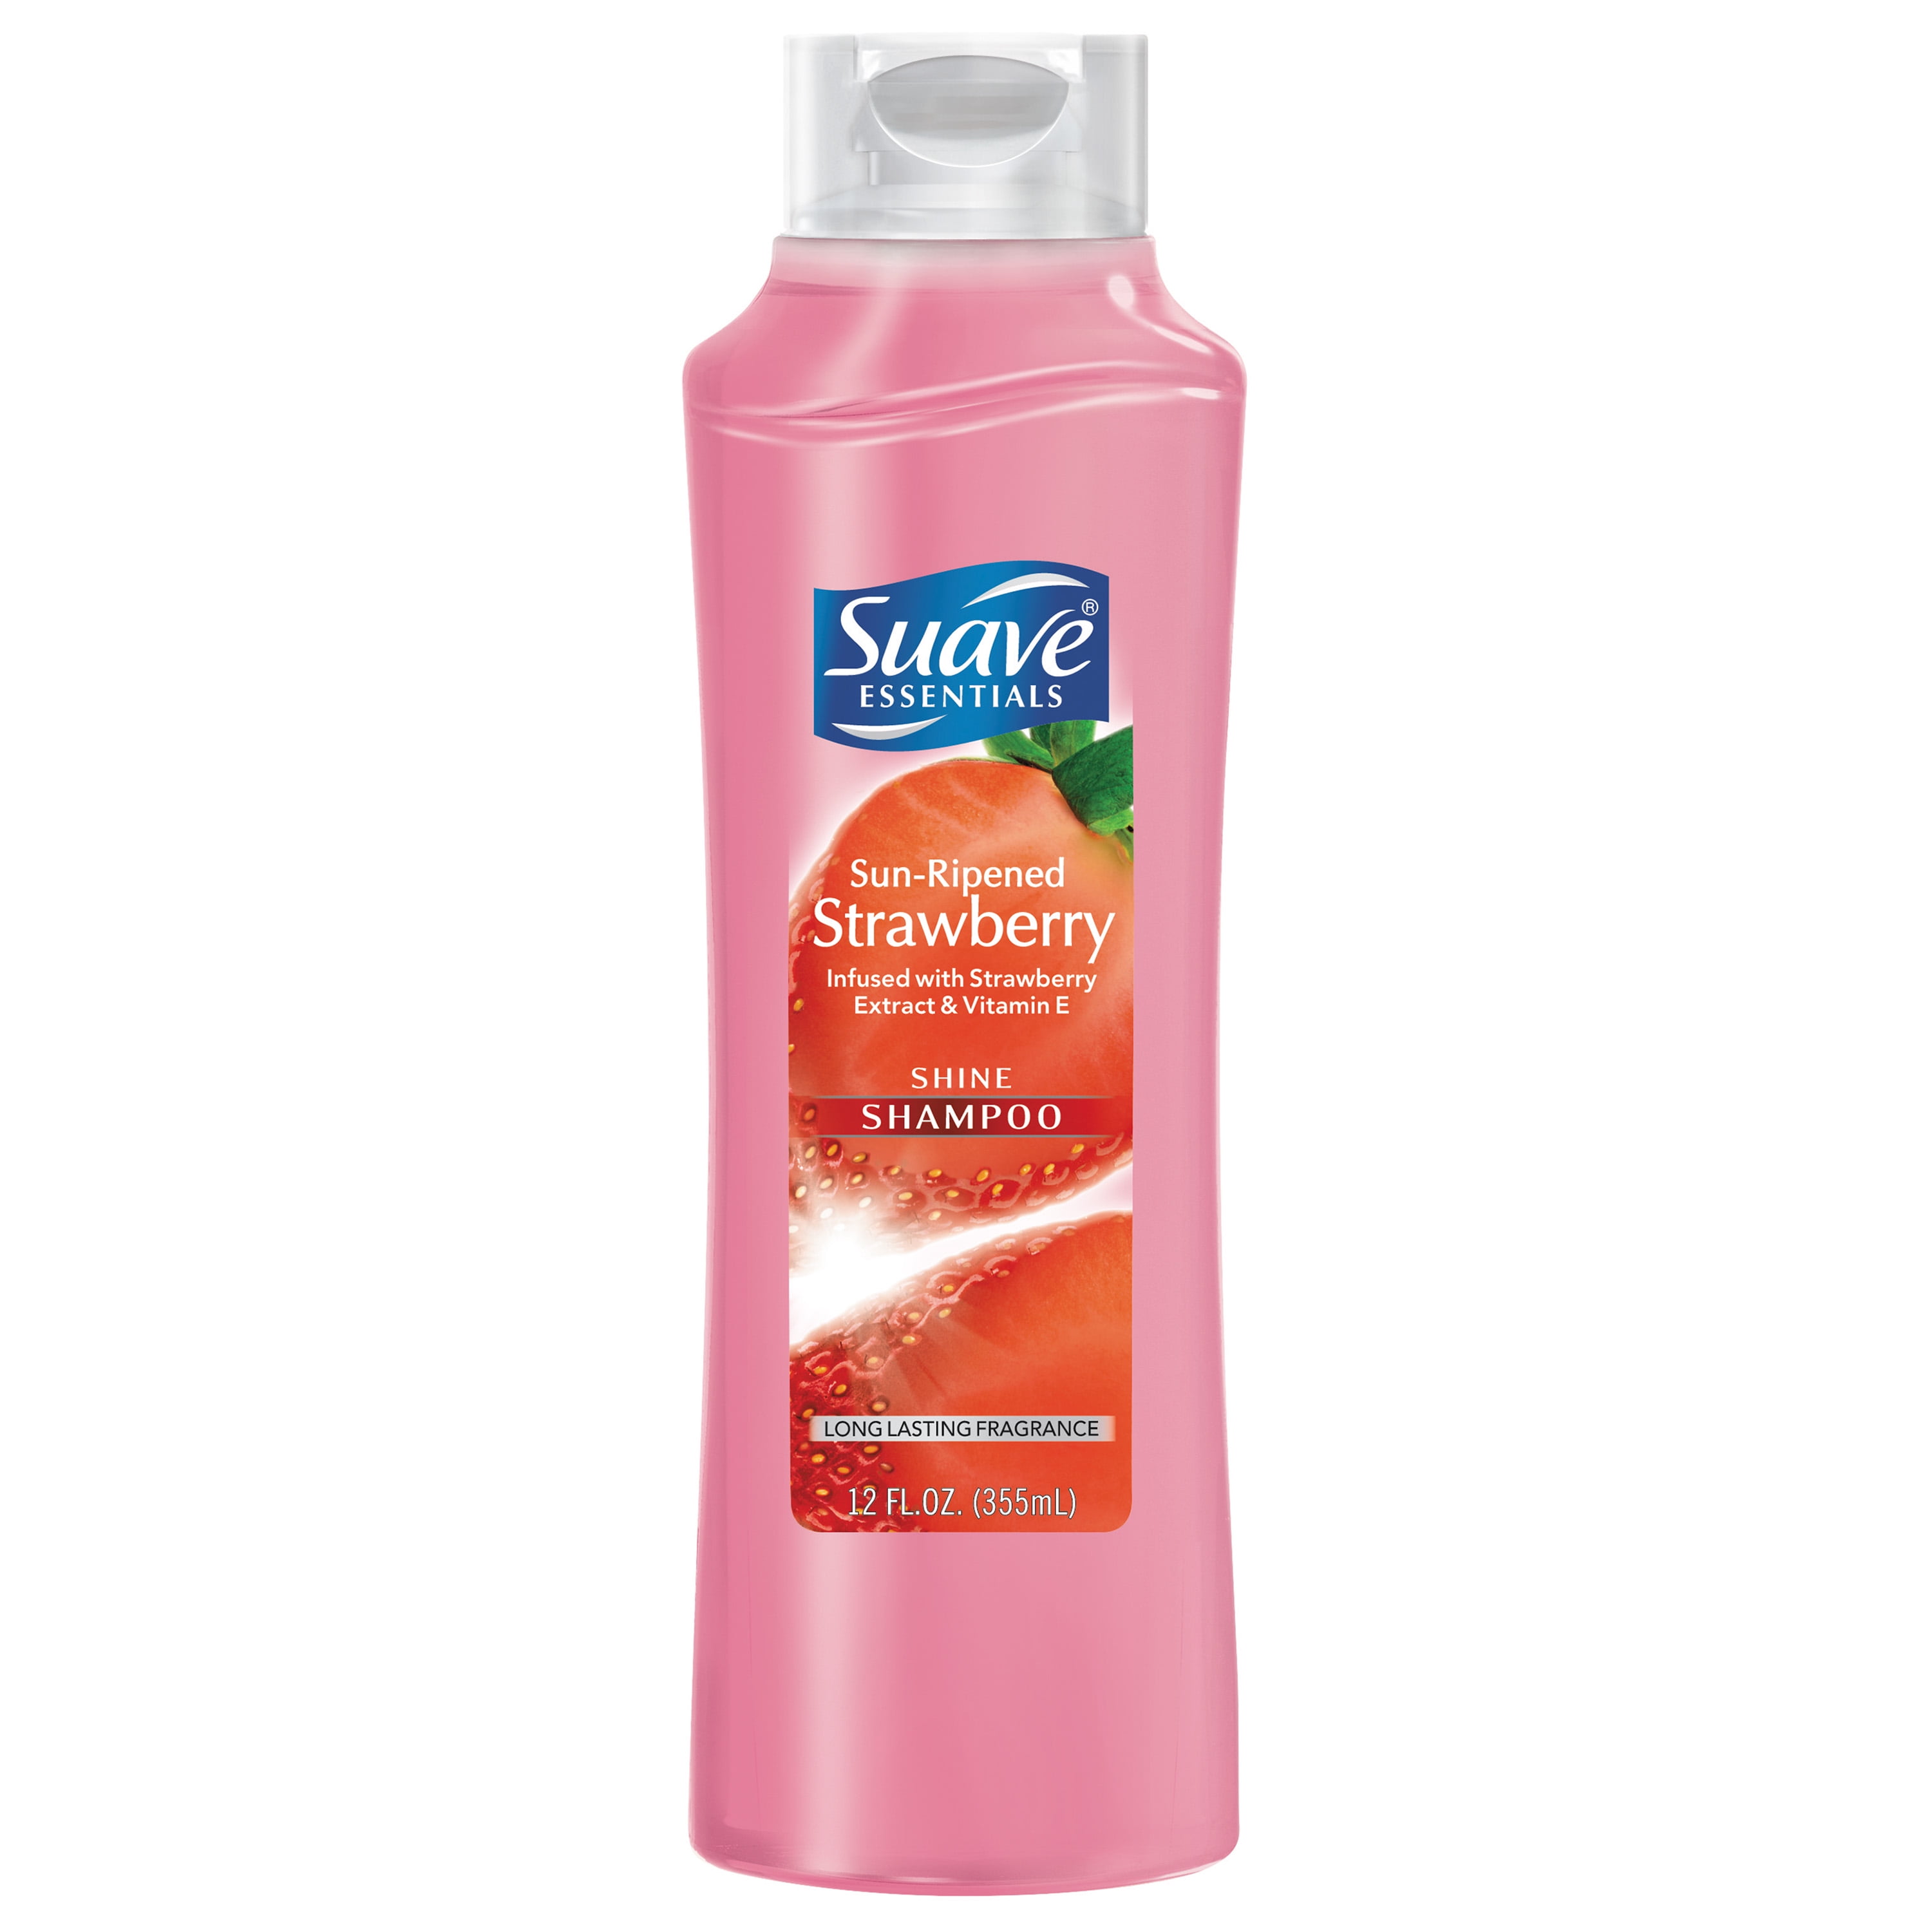 strawberry-suave-shampoo-ubicaciondepersonas-cdmx-gob-mx